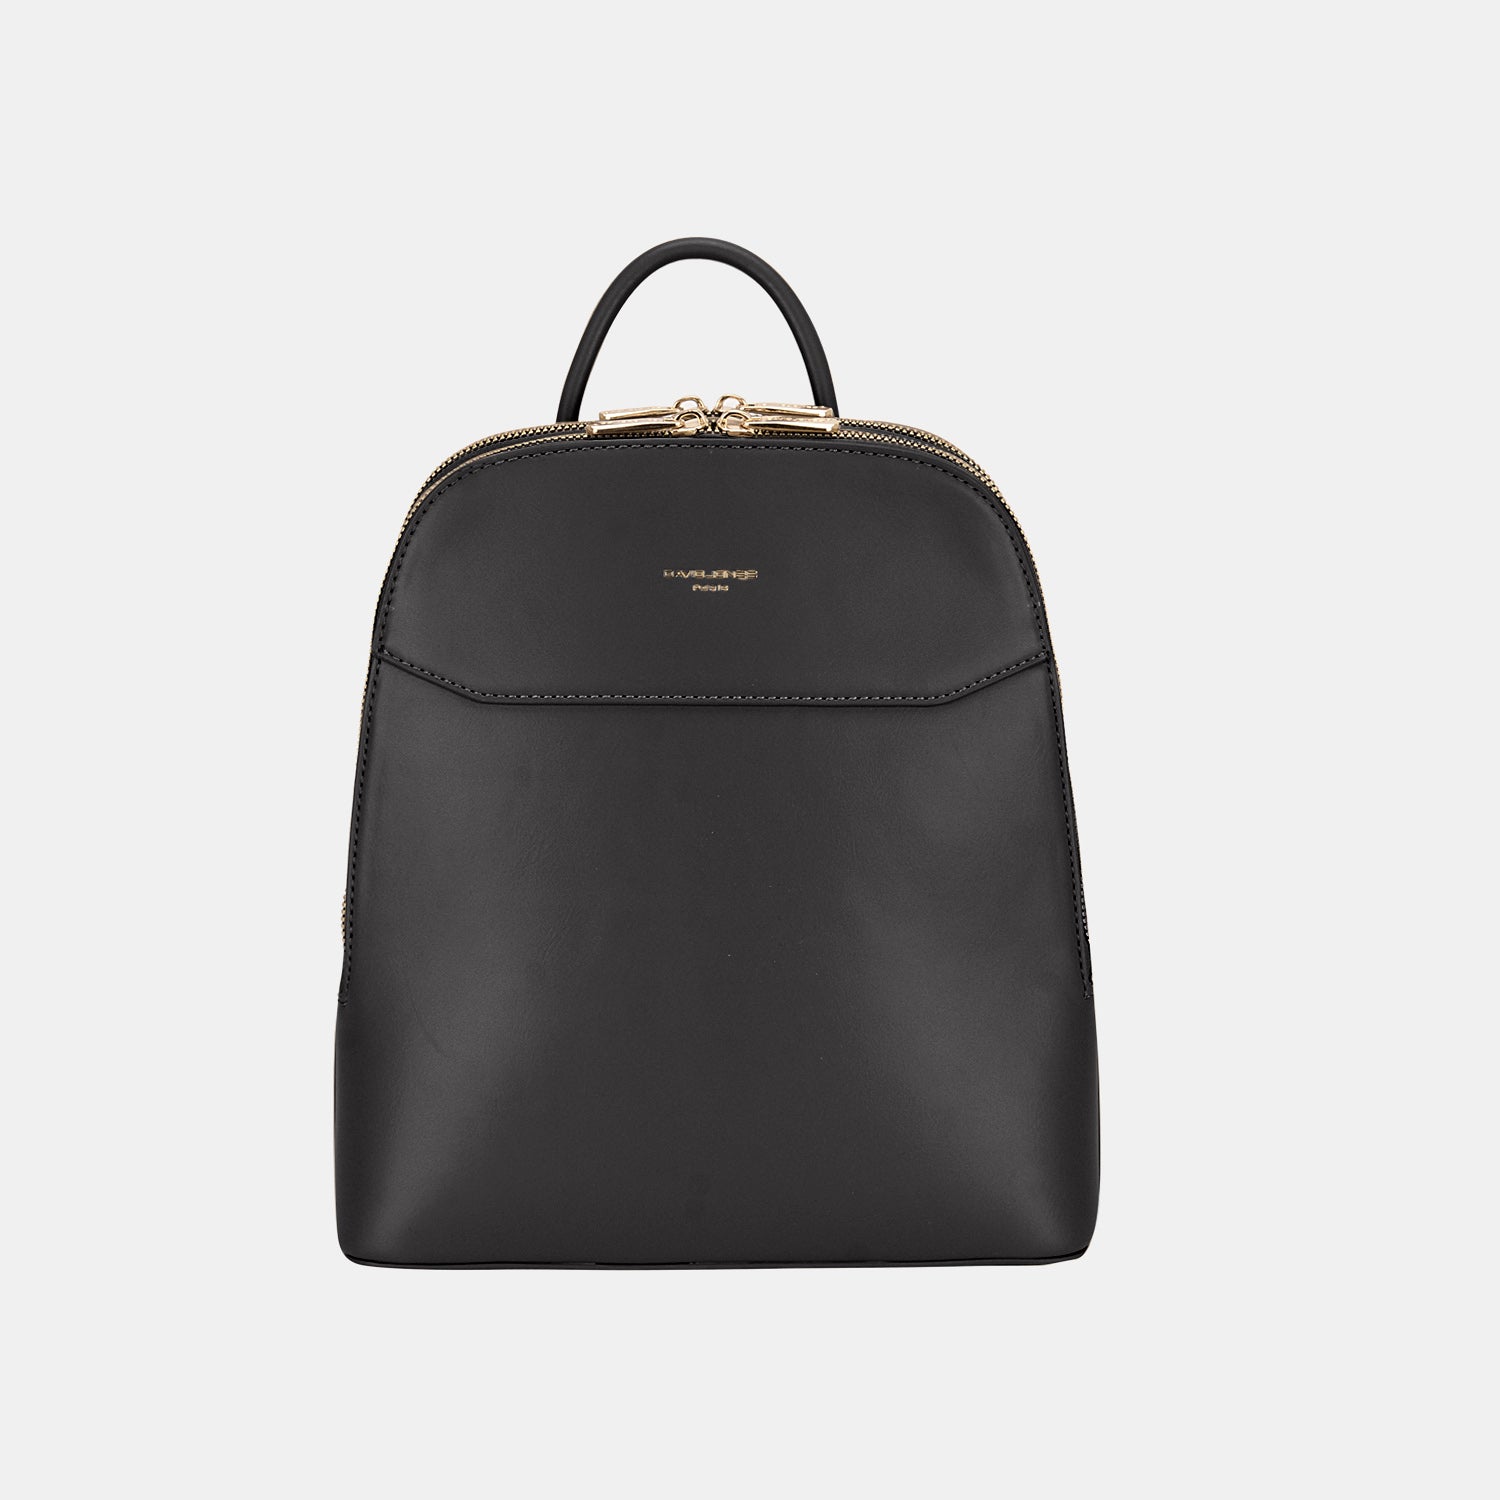 Leather Adjustable Straps Backpack Bag